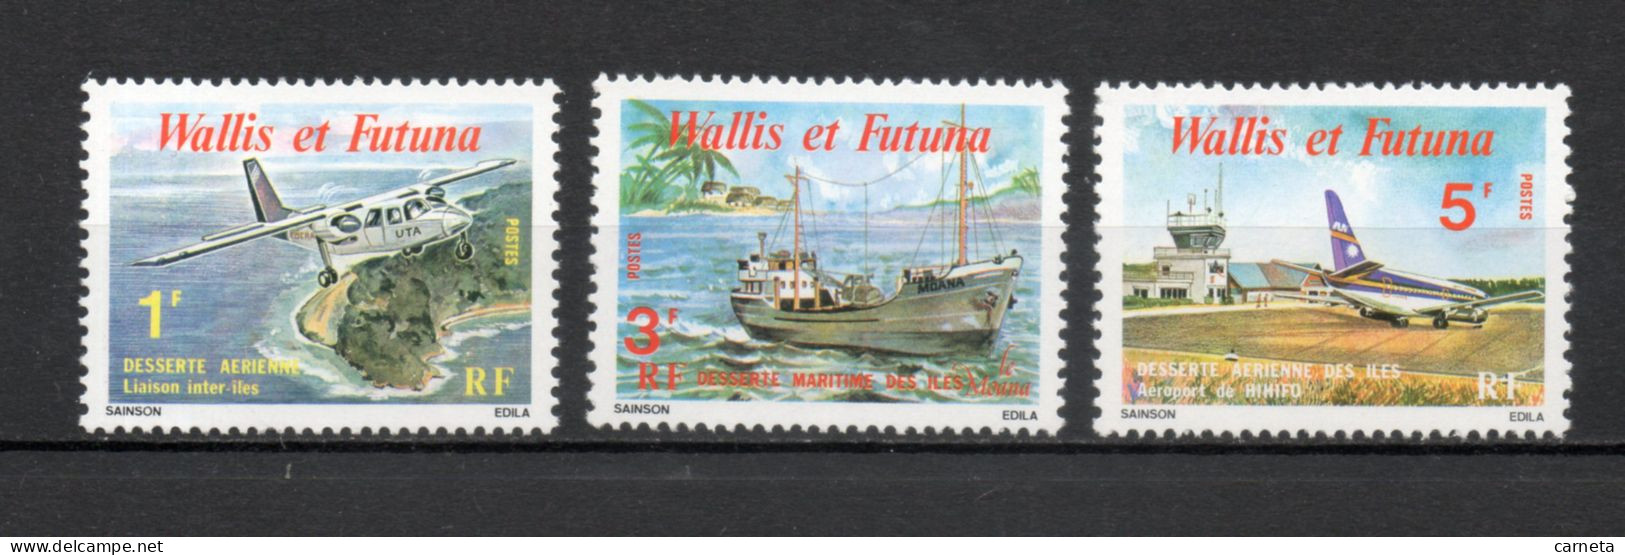 WALLIS ET FUTUNA N° 254 à 256   NEUFS SANS CHARNIERE COTE 0.85€    AVION BATEAUX - Unused Stamps